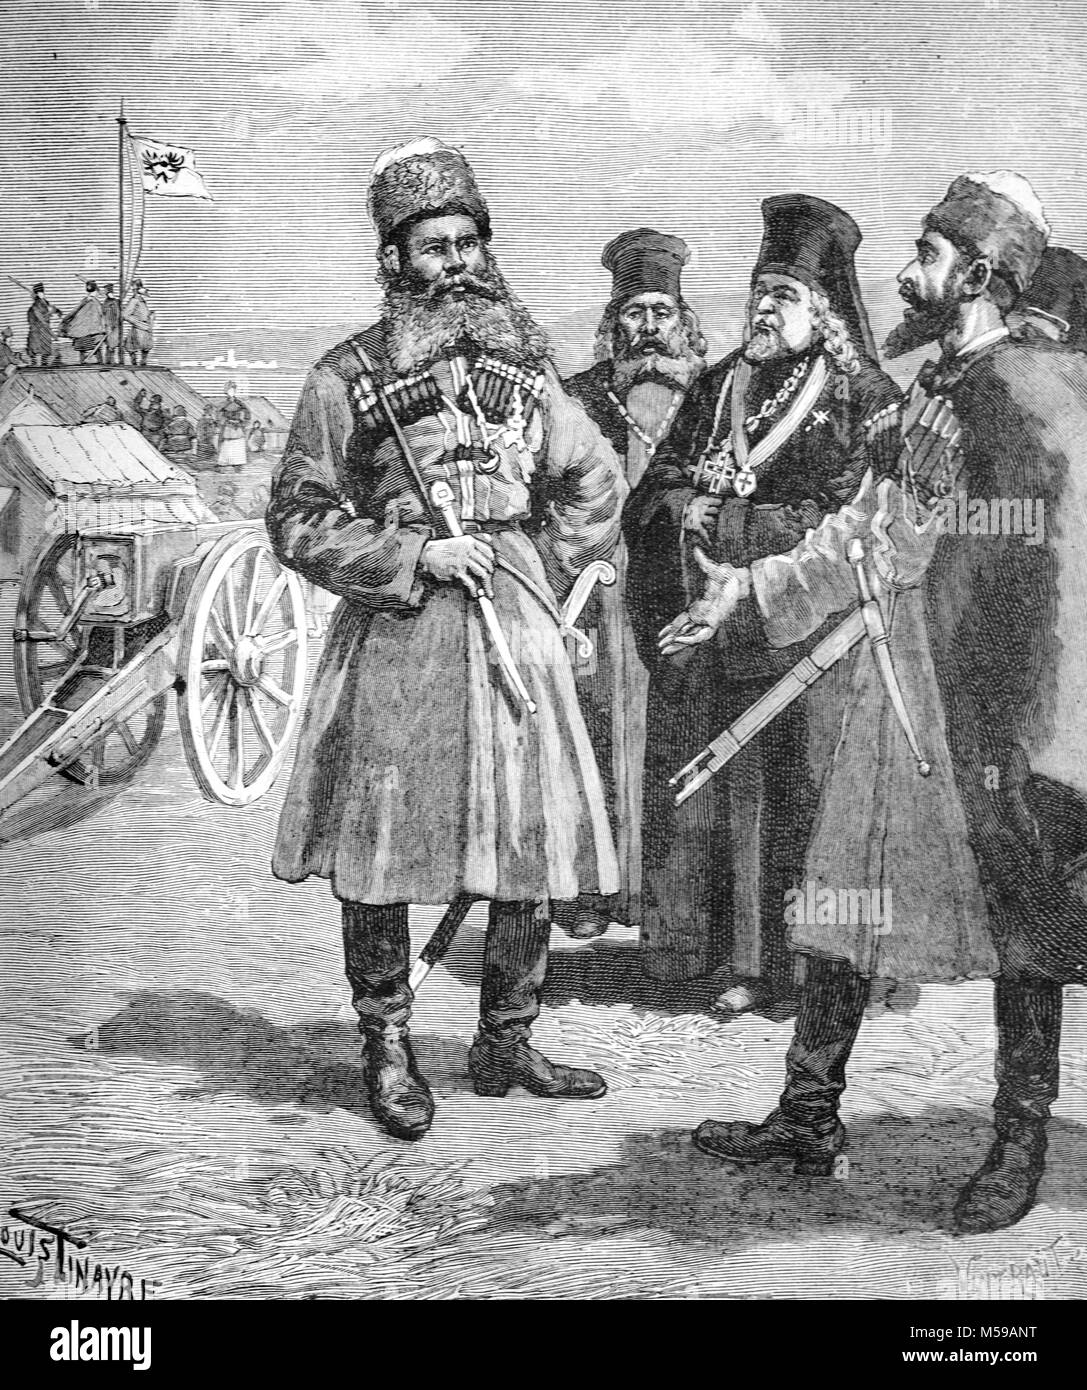 Nilolay Ivanovitch Achinov (b. 1856), ein russischer Abenteurer und Kosak, während seiner Expedition 1888 auf Französisch Somaliland oder Dschibuti. 1889 gründete er eine kurzlebige russische Siedlung bekannt als Sagallo, in den Golf von Tadjoura, Dschibuti, Afrika (Gravur, 1889) Stockfoto